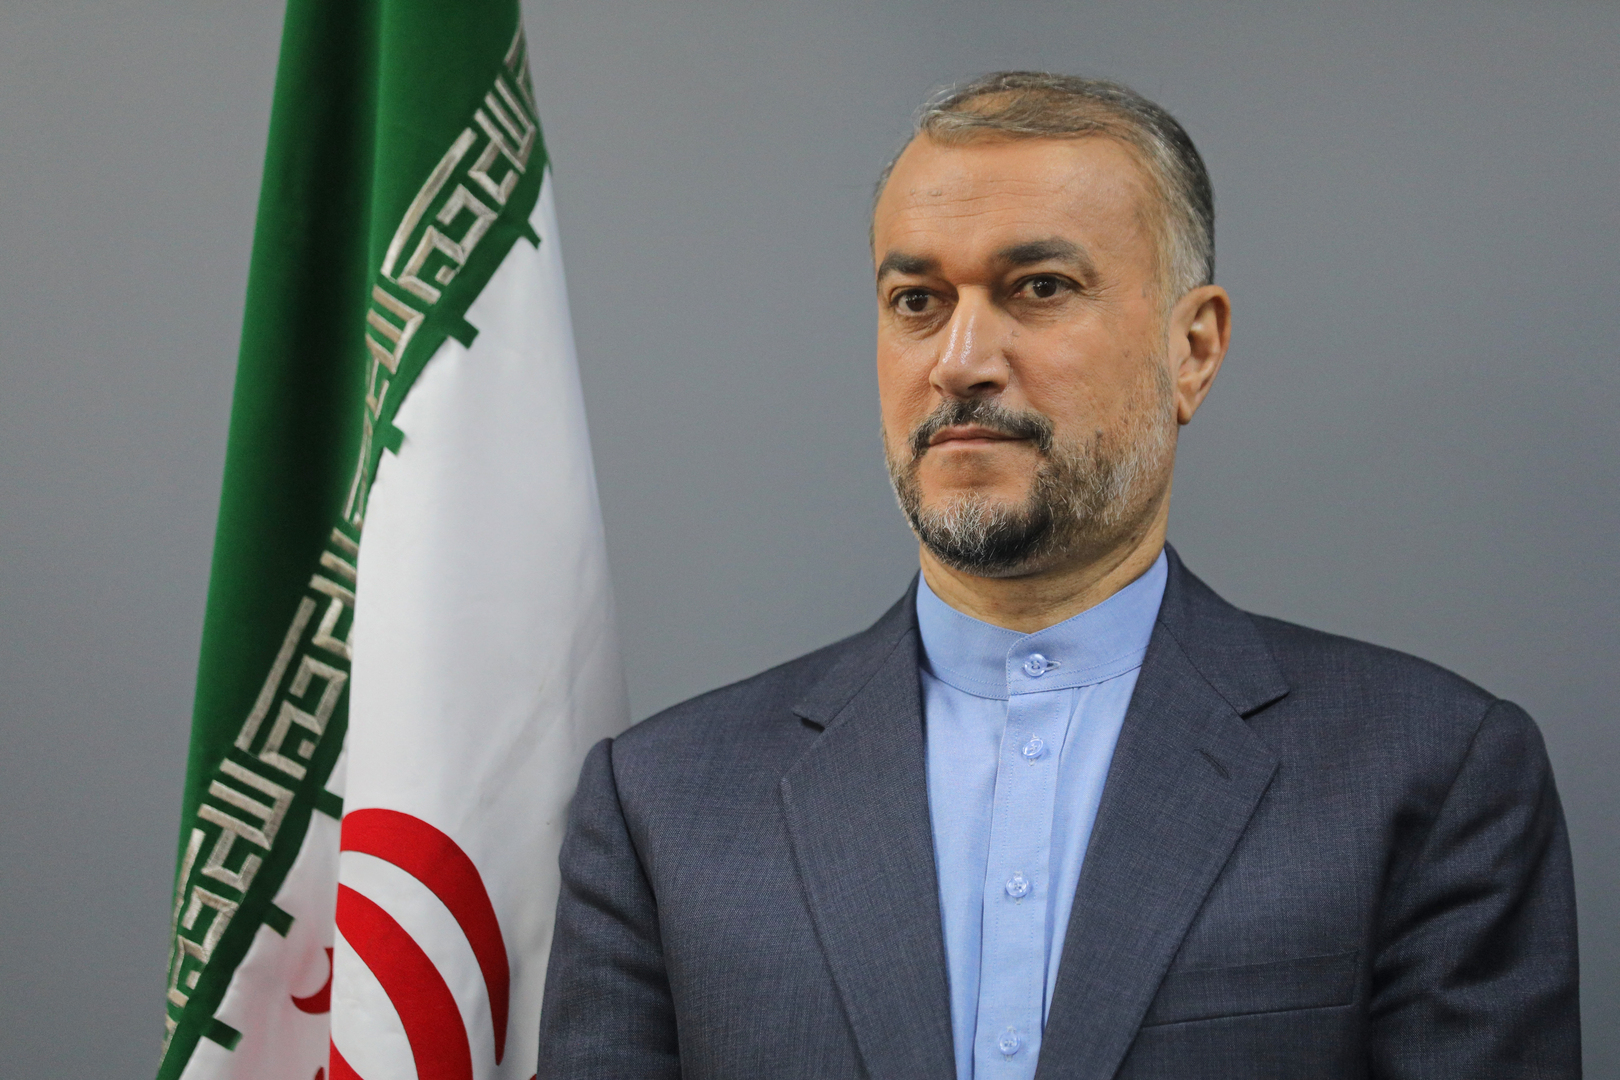 وزير خارجية إيران: أصبح من المحتم الآن توسيع نطاق الحرب بسبب تزايد حدة الحرب الإسرائيلية في غزة